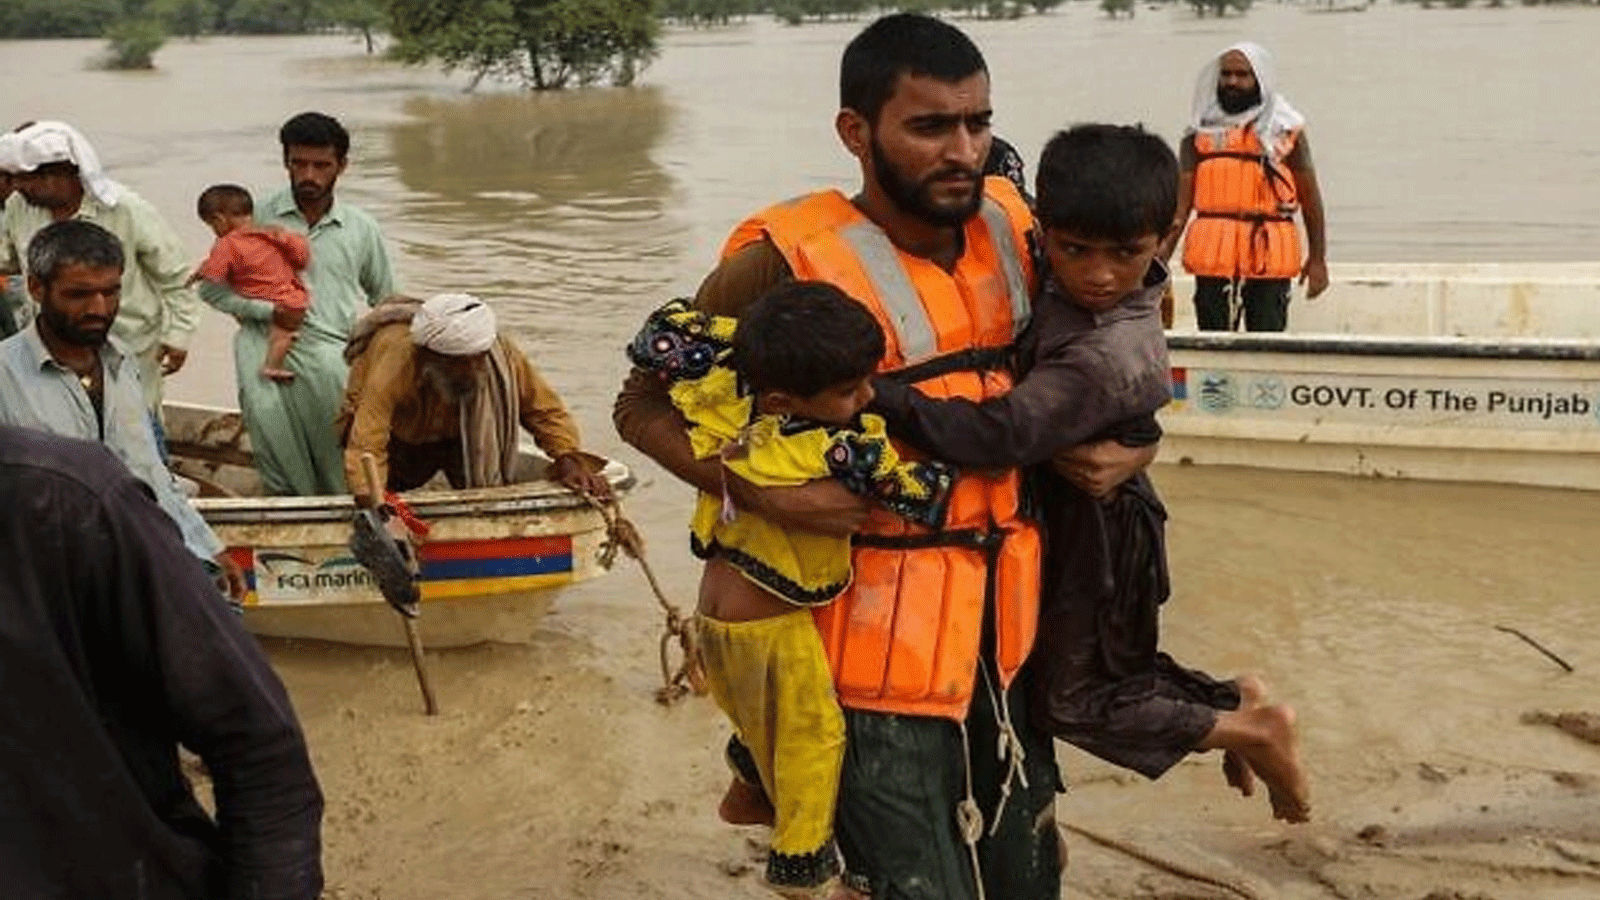 عمال الإنقاذ يساعدون في إجلاء الباكستانيين المتضررين من الفيضانات من منازلهم التي ضربتها الفيضانات بعد هطول أمطار موسمية غزيرة في منطقة راجانبور بمقاطعة البنجاب في 27 آب\ أغسطس 2022.